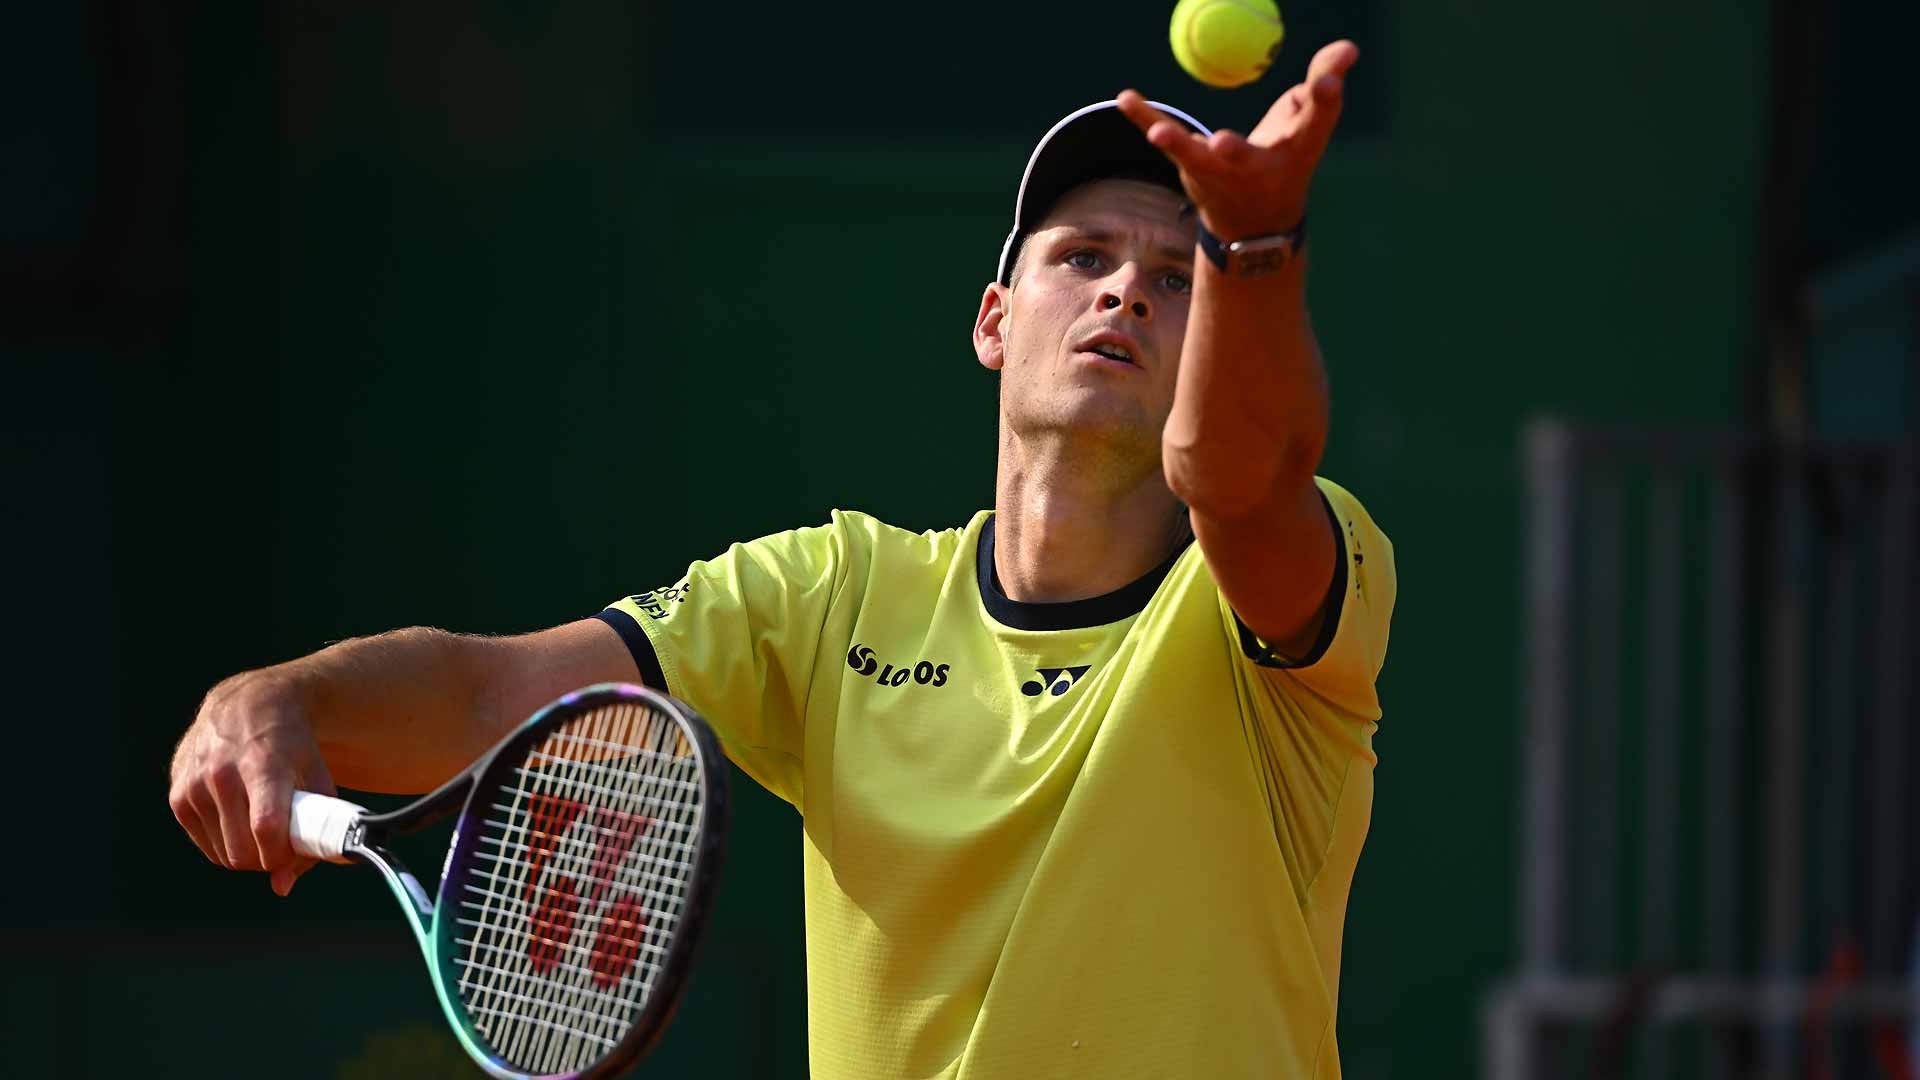  Tenismenul Hubert Hurkacz va dona 100 de euro pentru Ucraina la fiecare as pe care îl va reuşi la Wimbledon